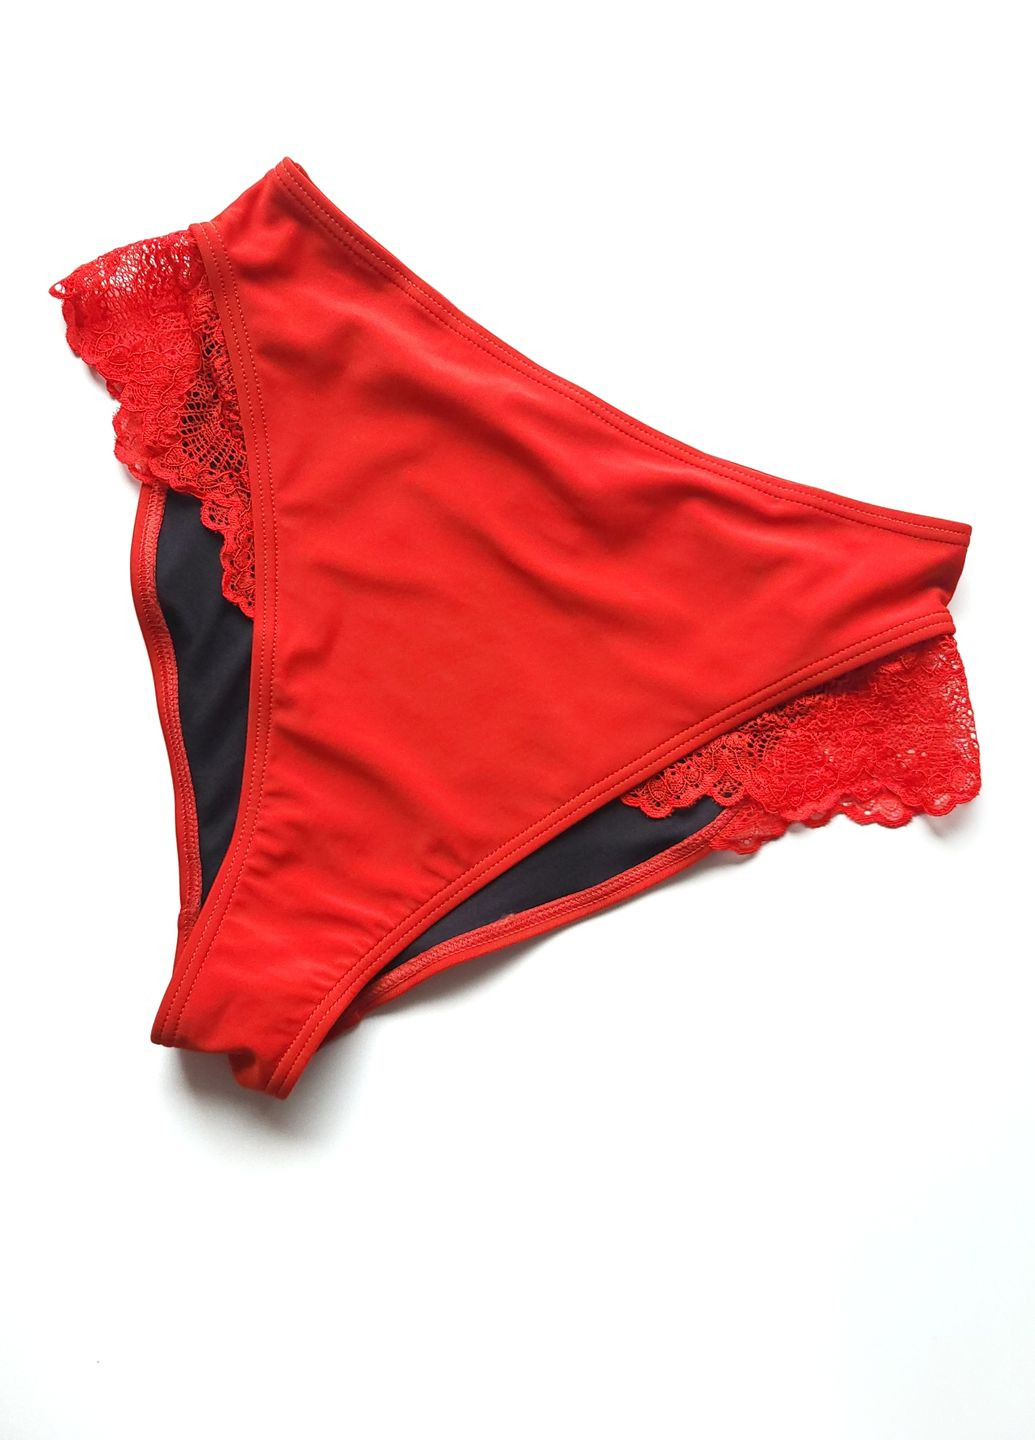 Красные трусики для плаванья женские с гипюром без бренду красные однотонные No Brand